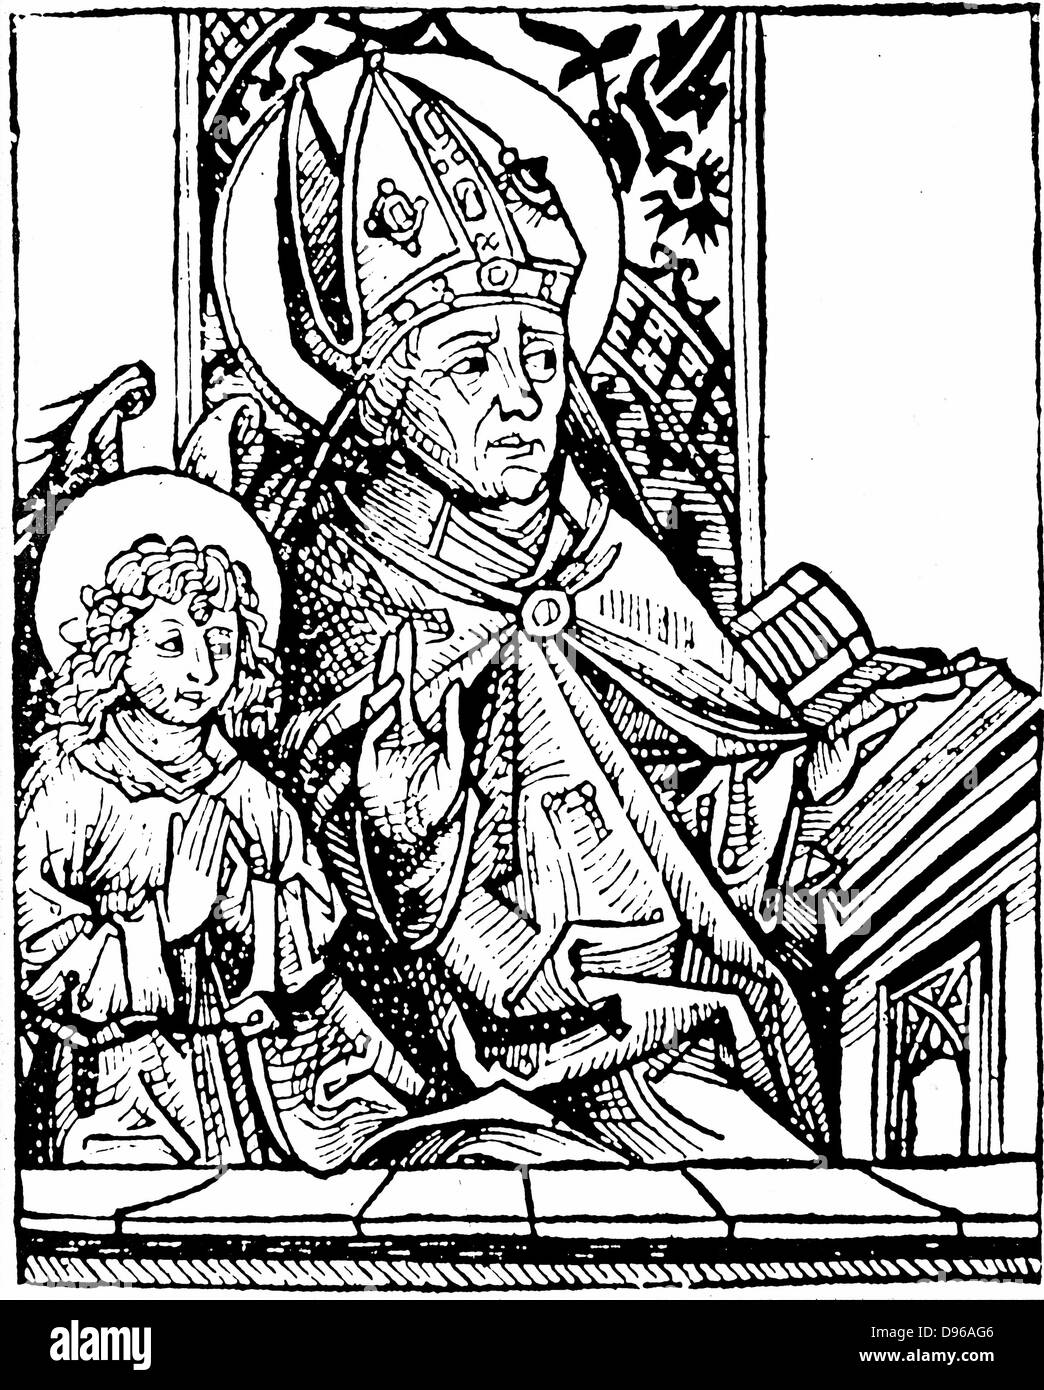 Der hl. Augustinus von Hippo (350-430), einer der großen Väter der frühen christlichen Kirche. Zweites Bild ist sein Sohn Ambrosius. Von Hartmann Schedel "Liber chronicarum mundi", Nürnberg, 1493. Holzschnitt Stockfoto